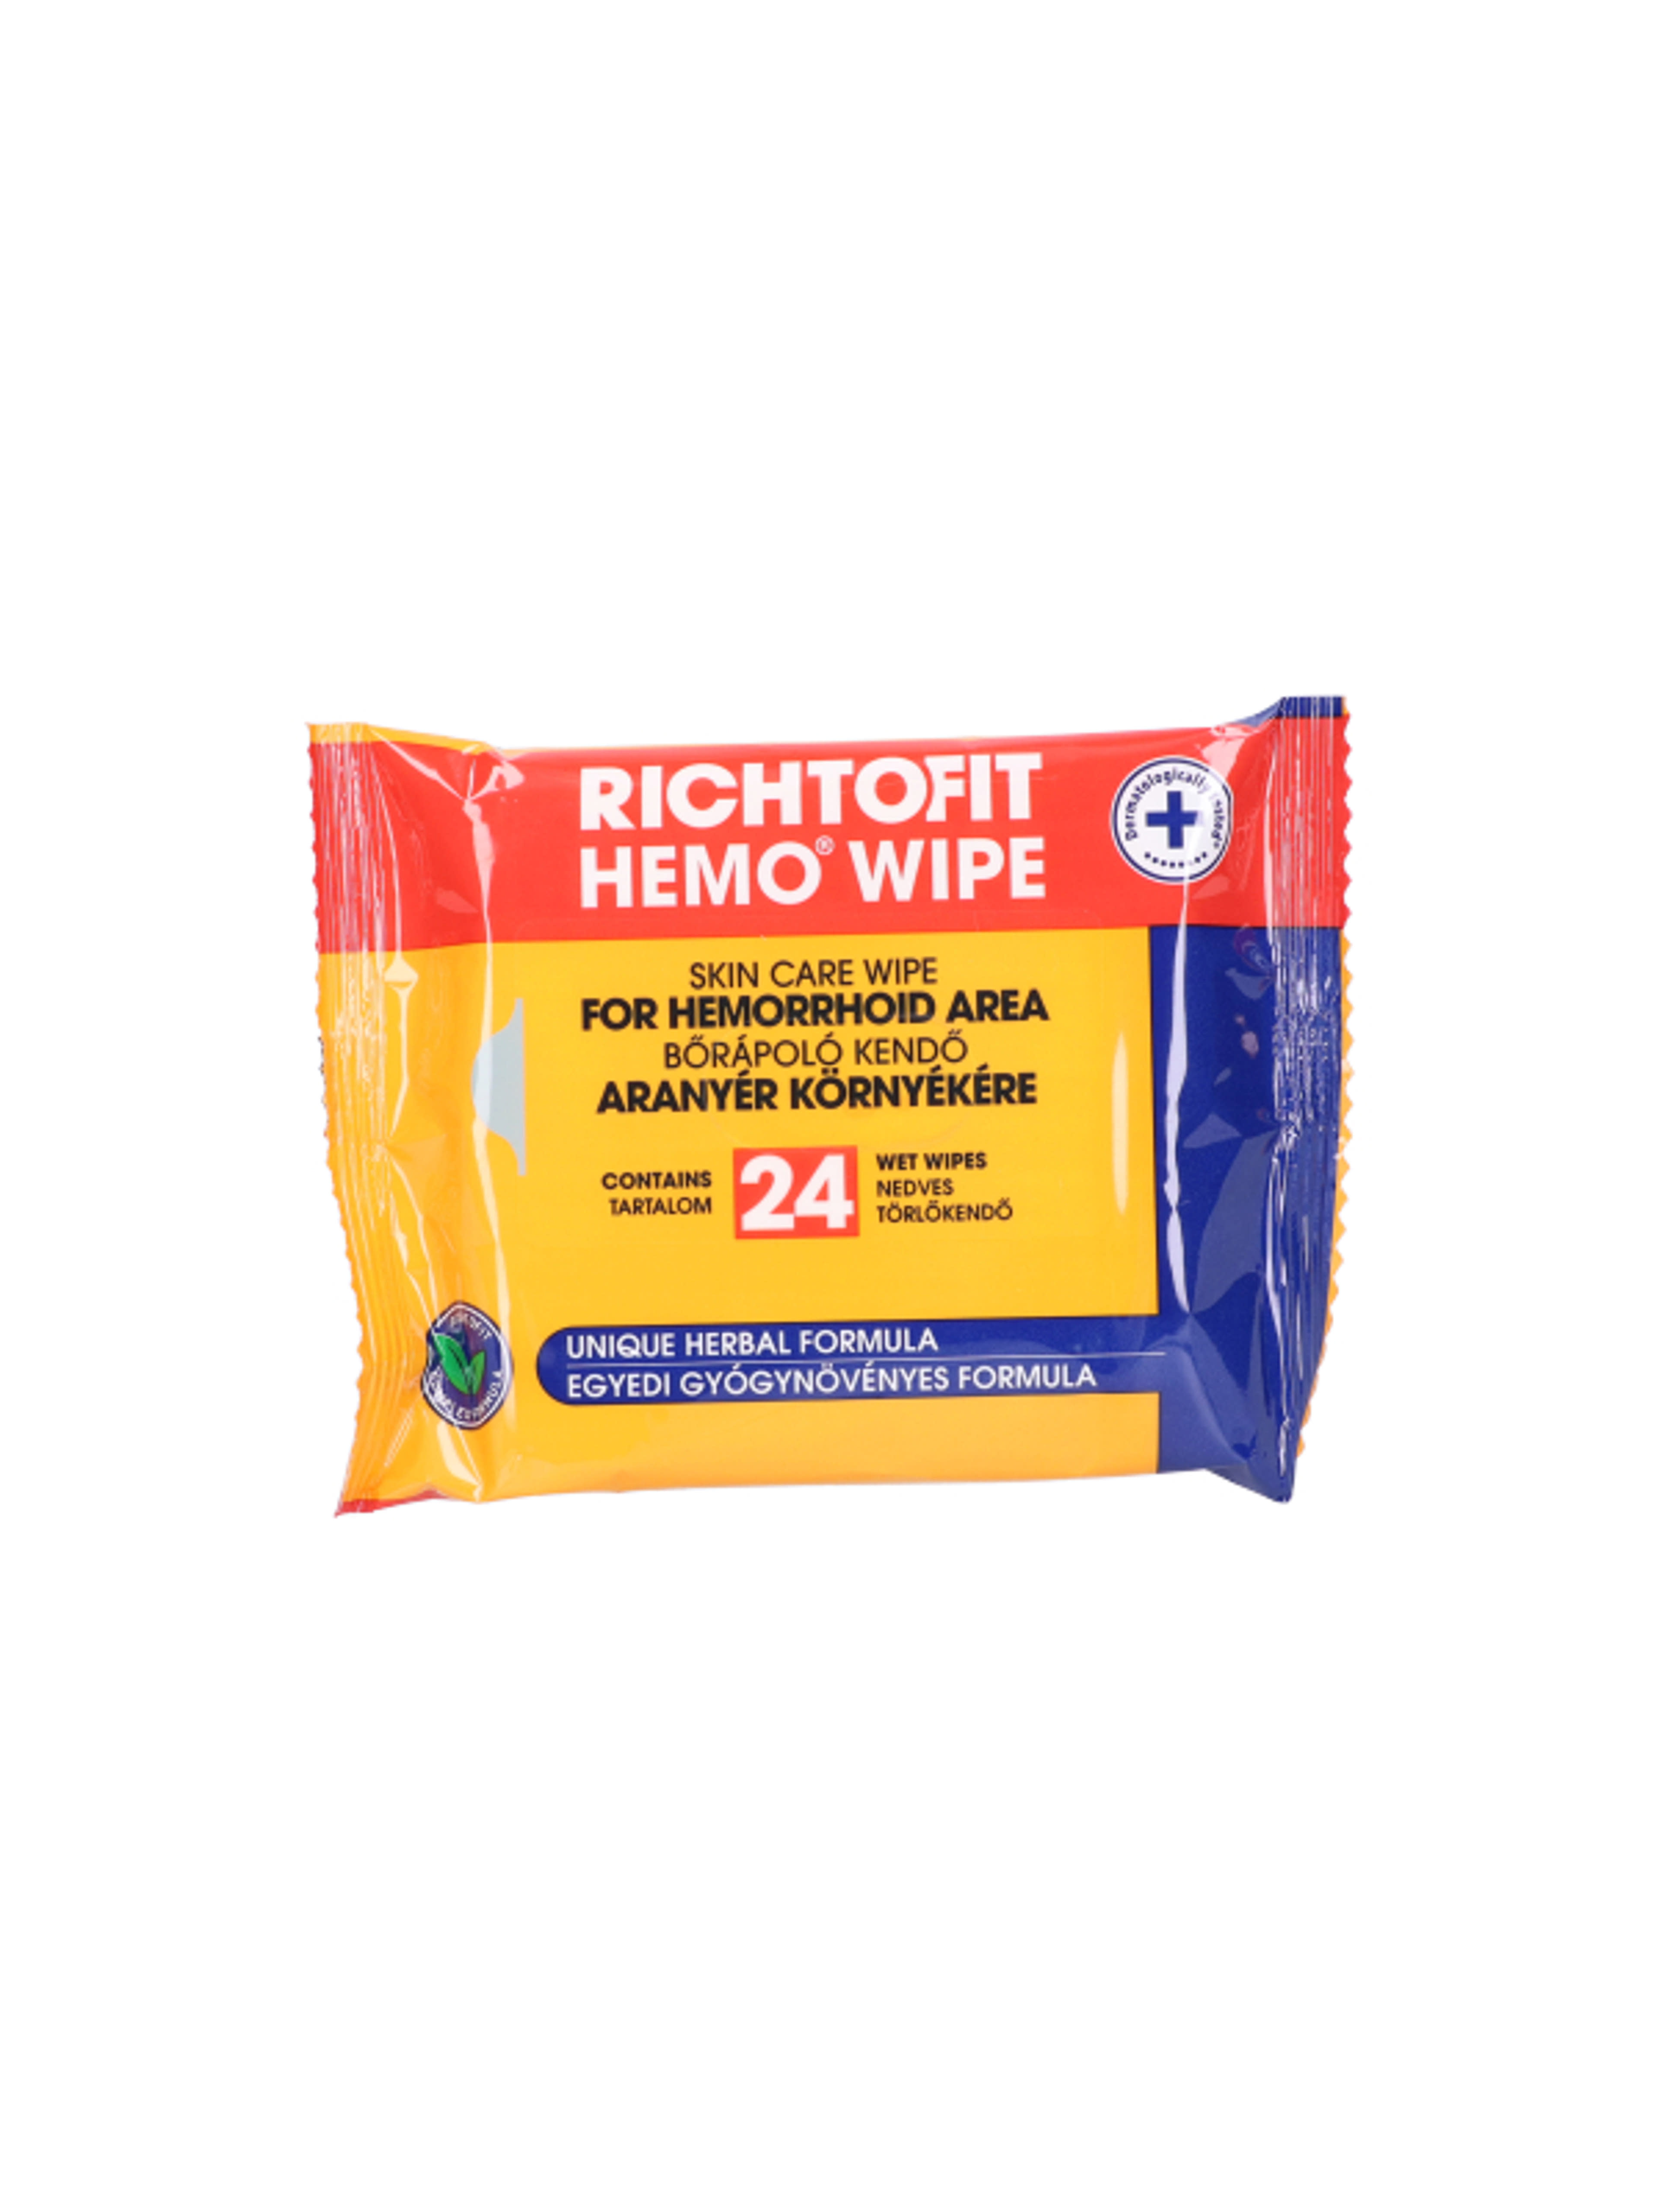 Richtofit hemo wipe bőrápoló kendő aranyérre - 24 db